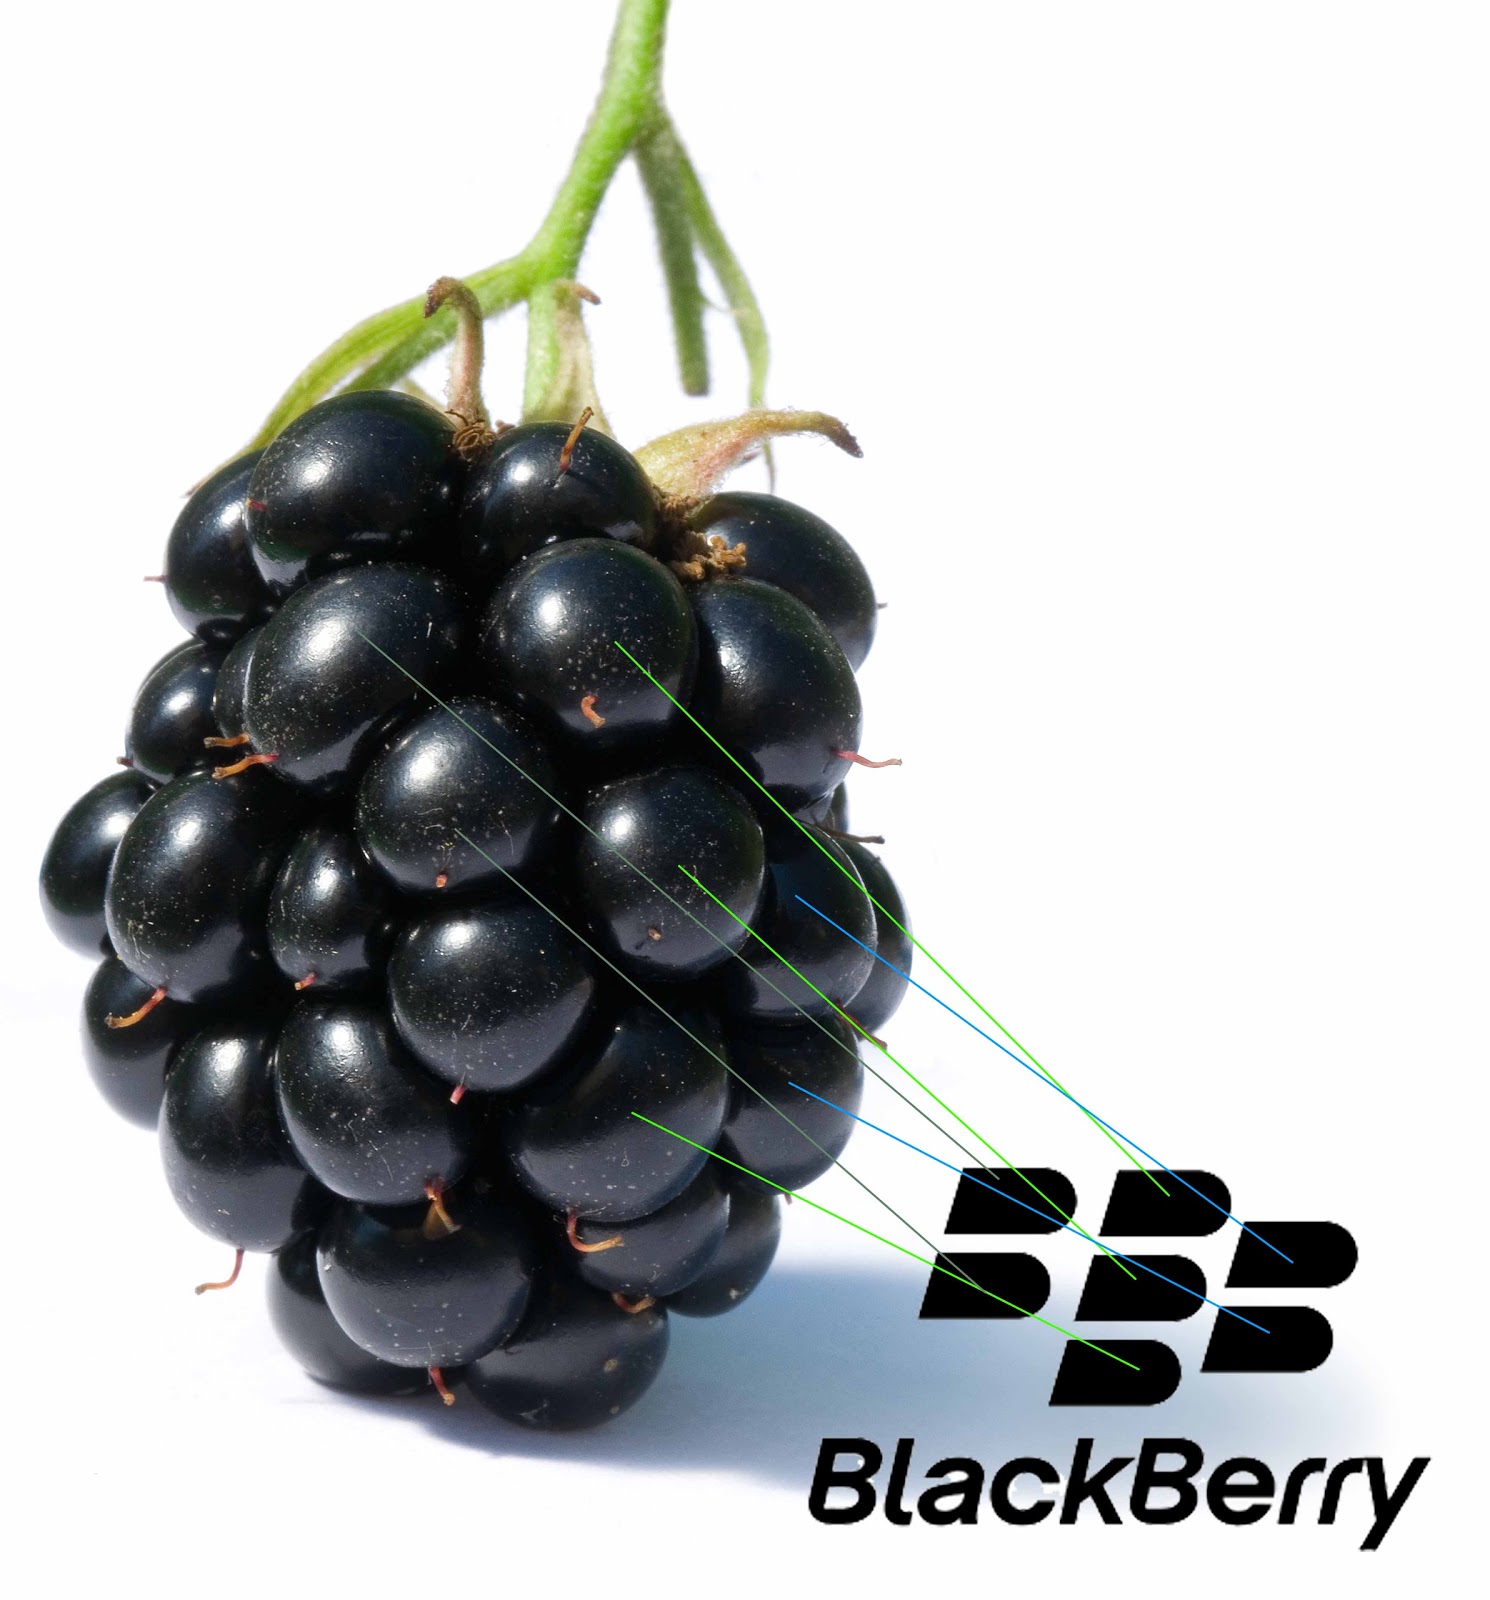 Penemu BlackBerry - Mike Lazaridis